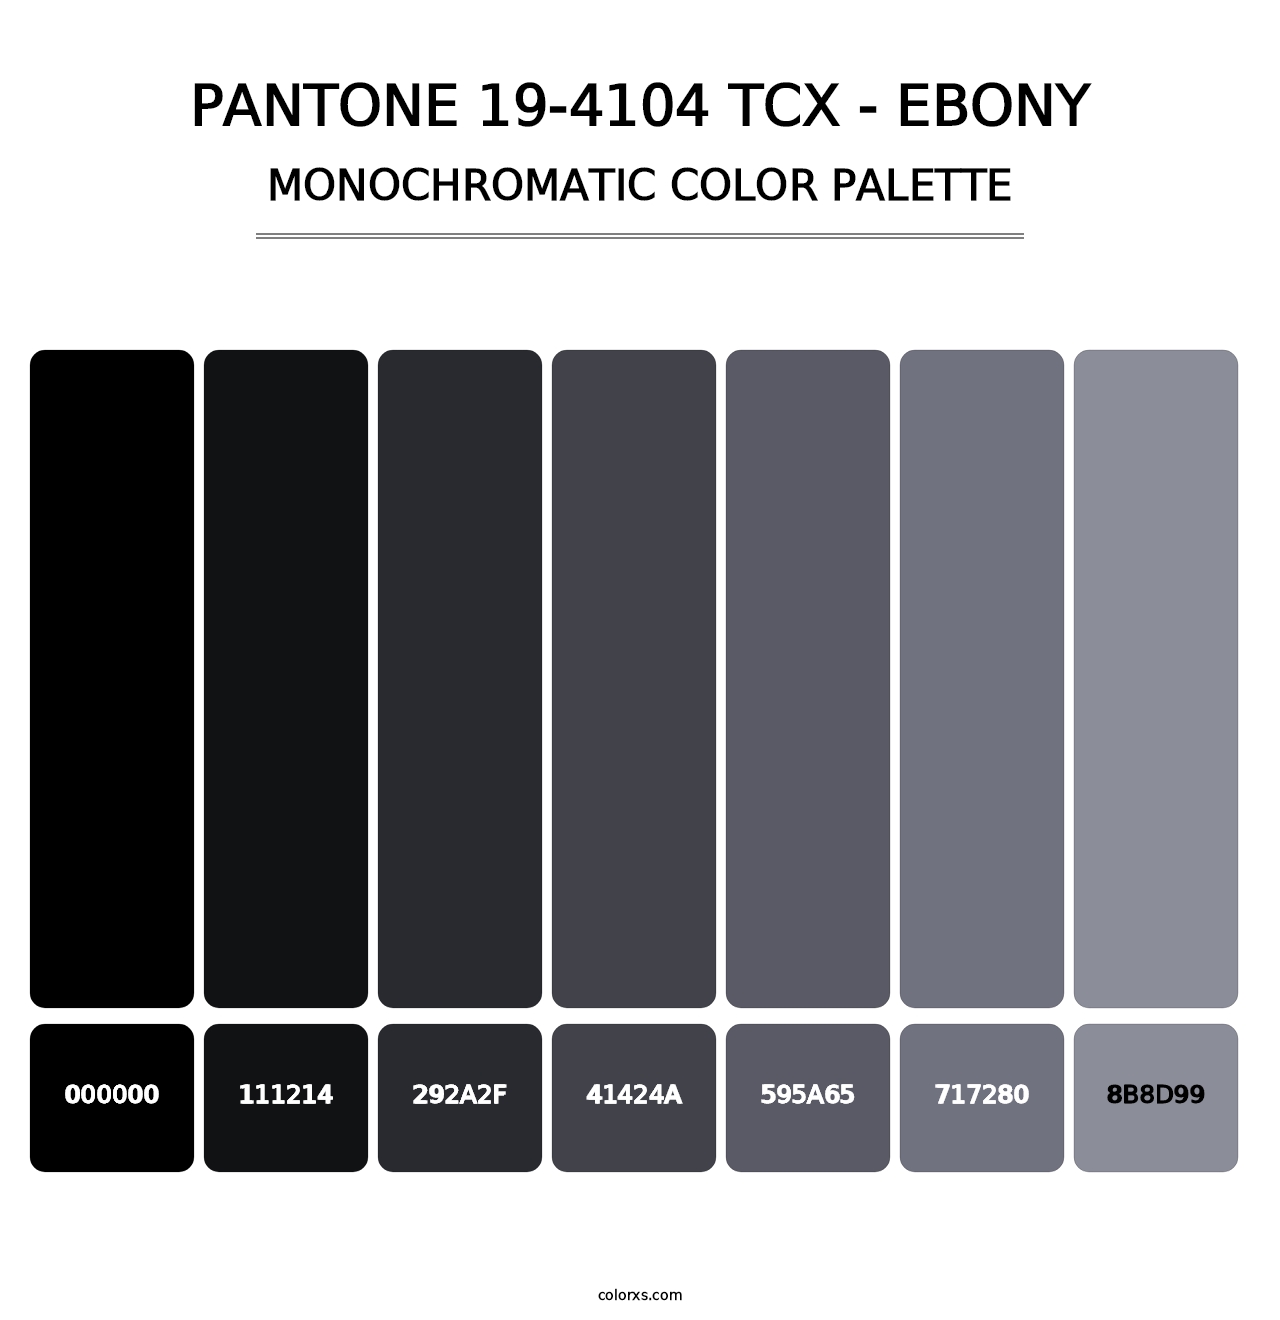 PANTONE 19-4104 TCX - Ebony - Monochromatic Color Palette